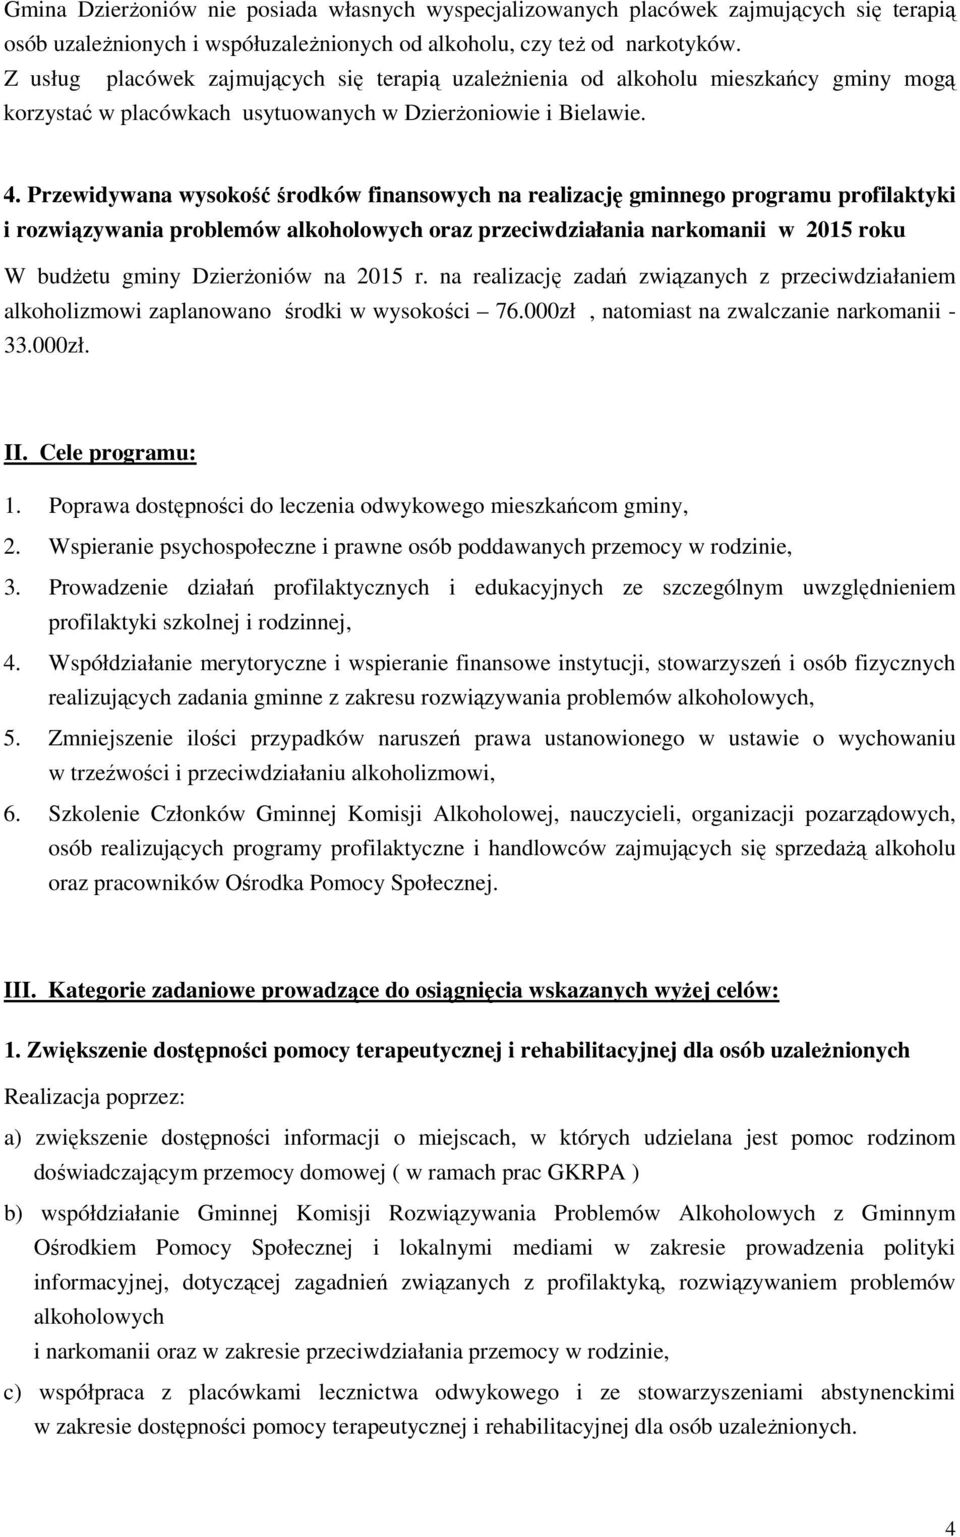 Przewidywana wysokość środków finansowych na realizację gminnego programu profilaktyki i rozwiązywania problemów alkoholowych oraz przeciwdziałania narkomanii w 2015 roku W budżetu gminy Dzierżoniów